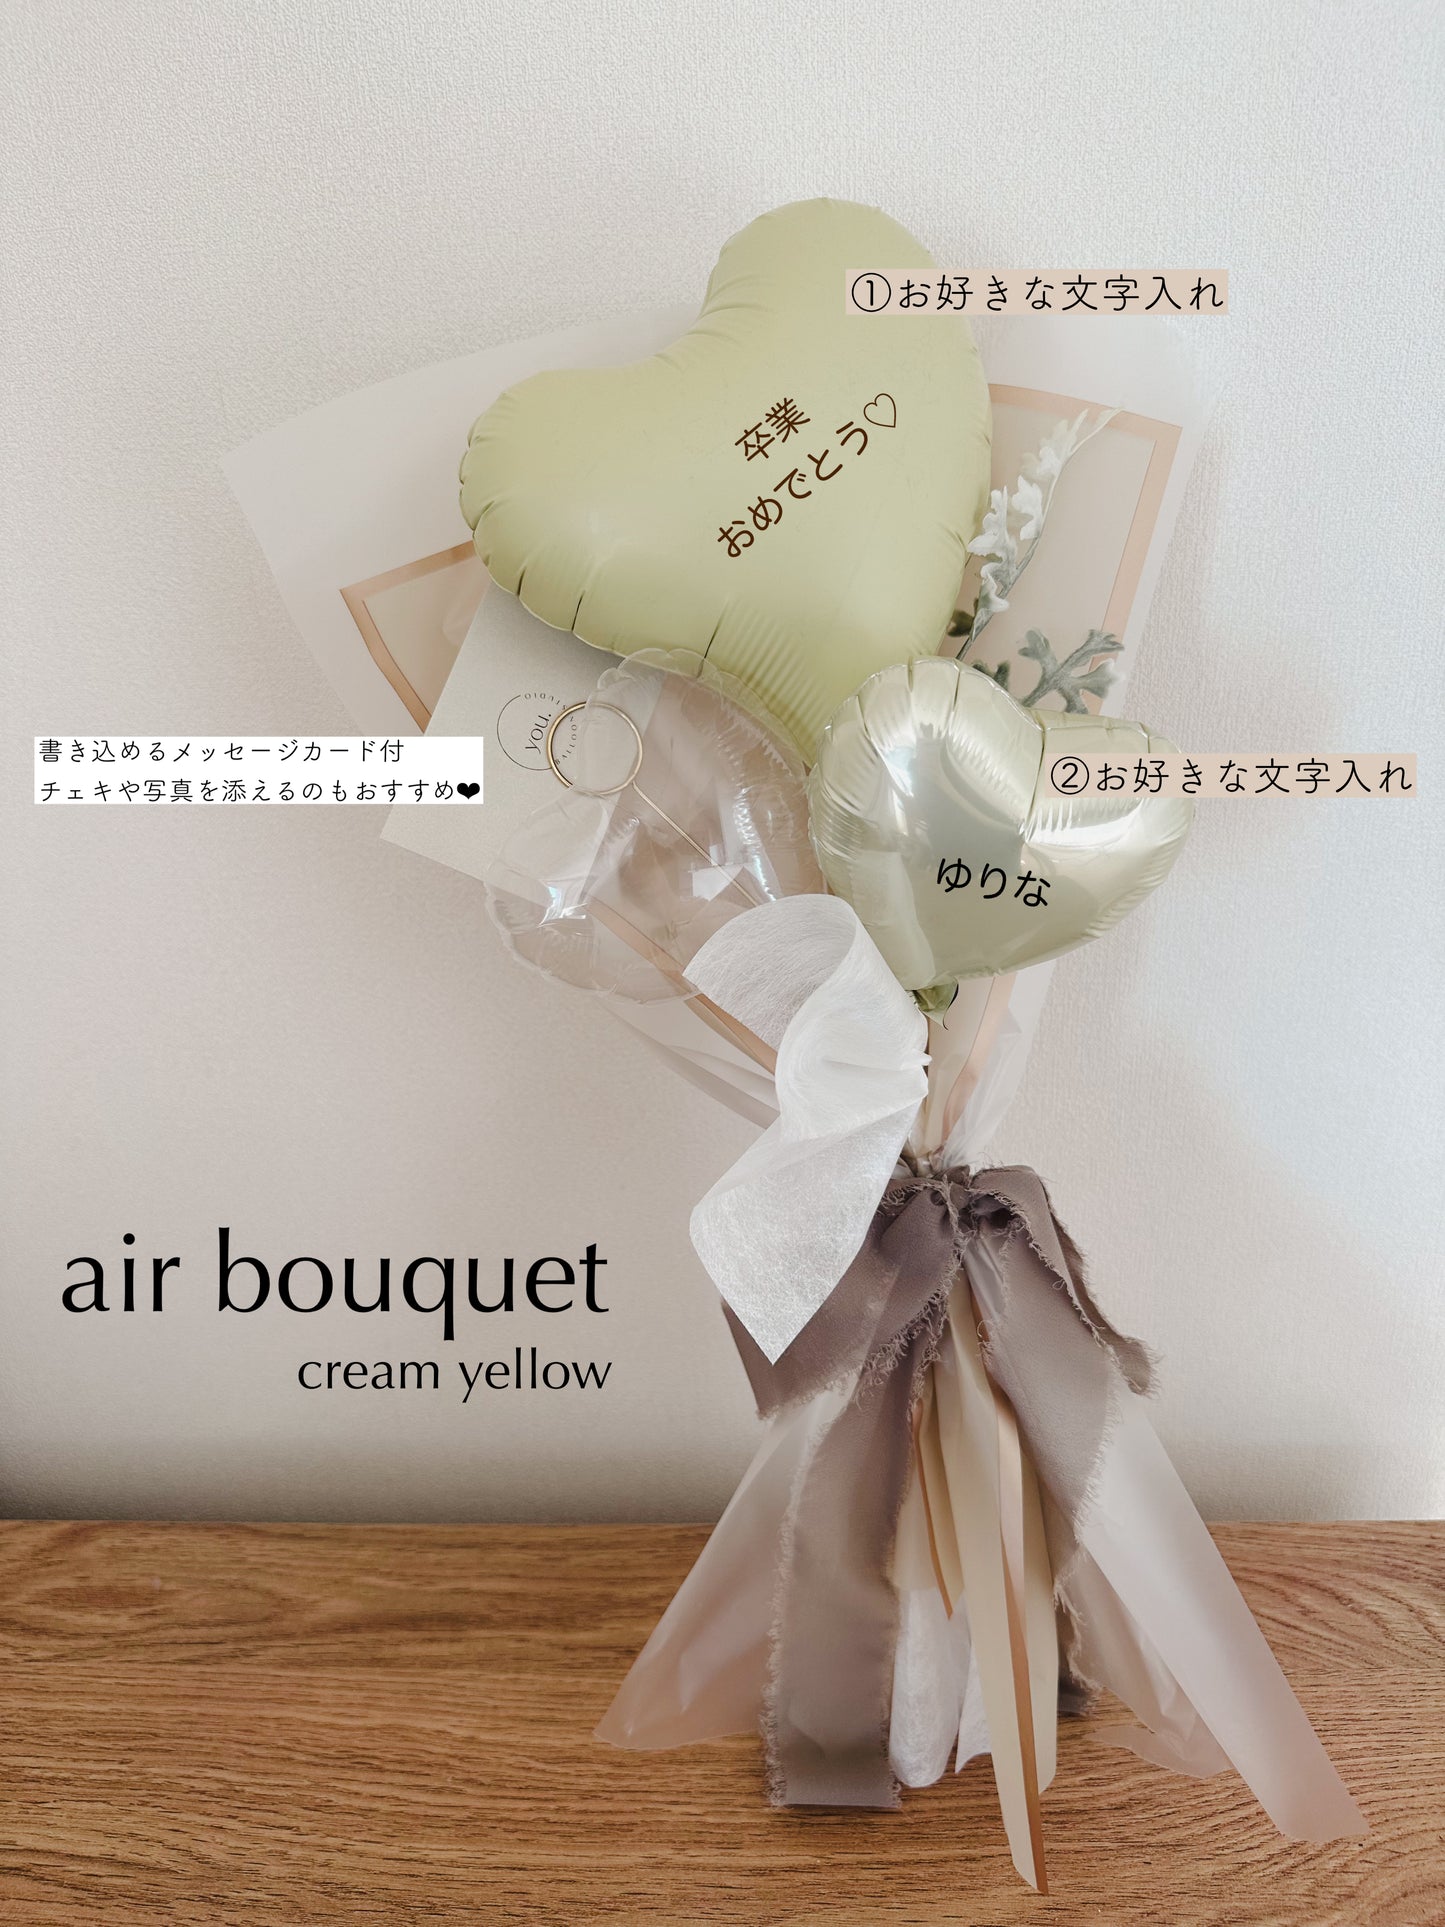 【air bouquet】 heart message